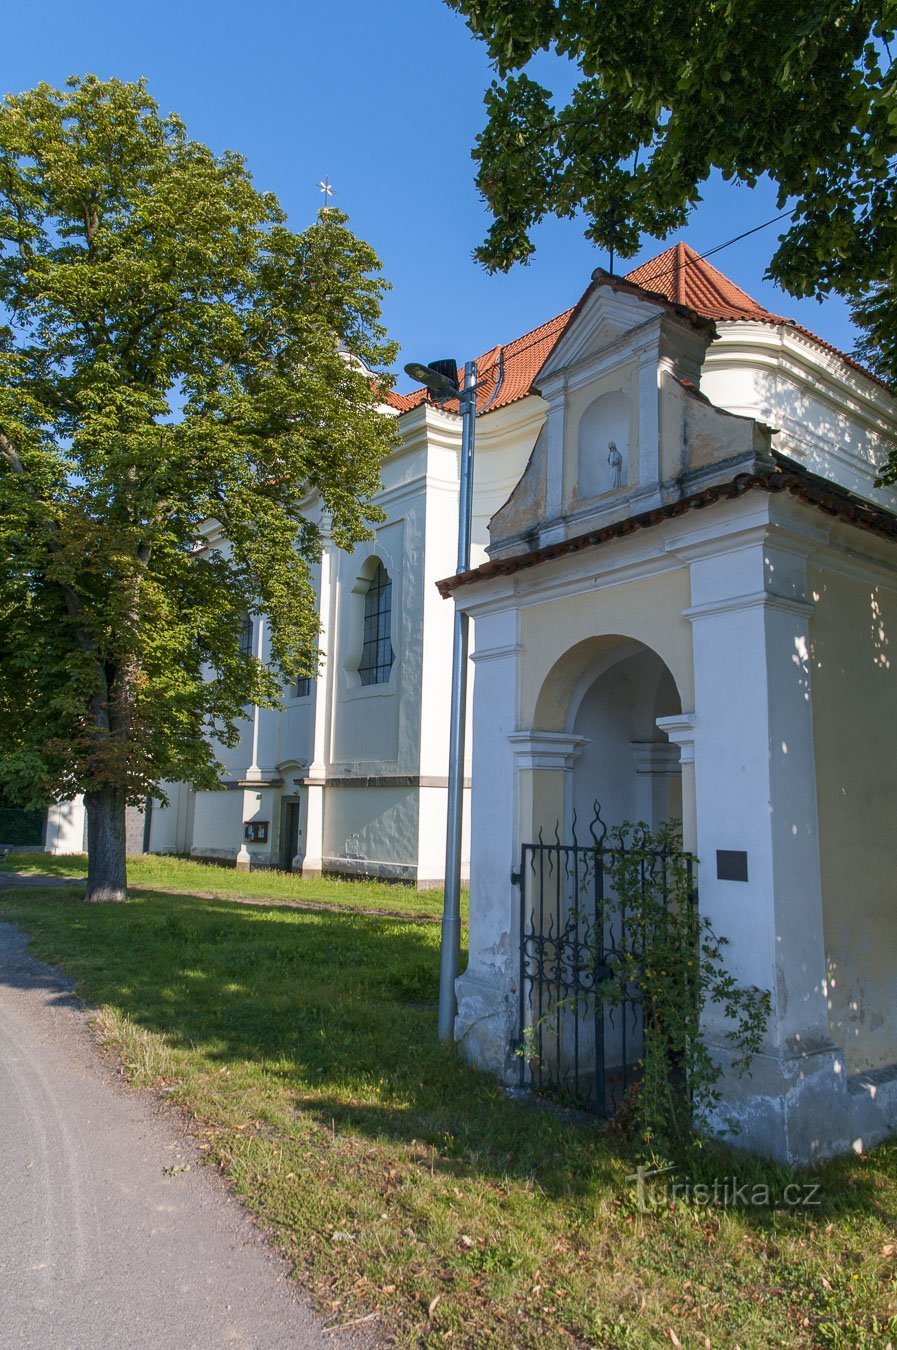 在南波希米亚之后，通过 Stádlec，Soběslav 到 Košice pt。 3